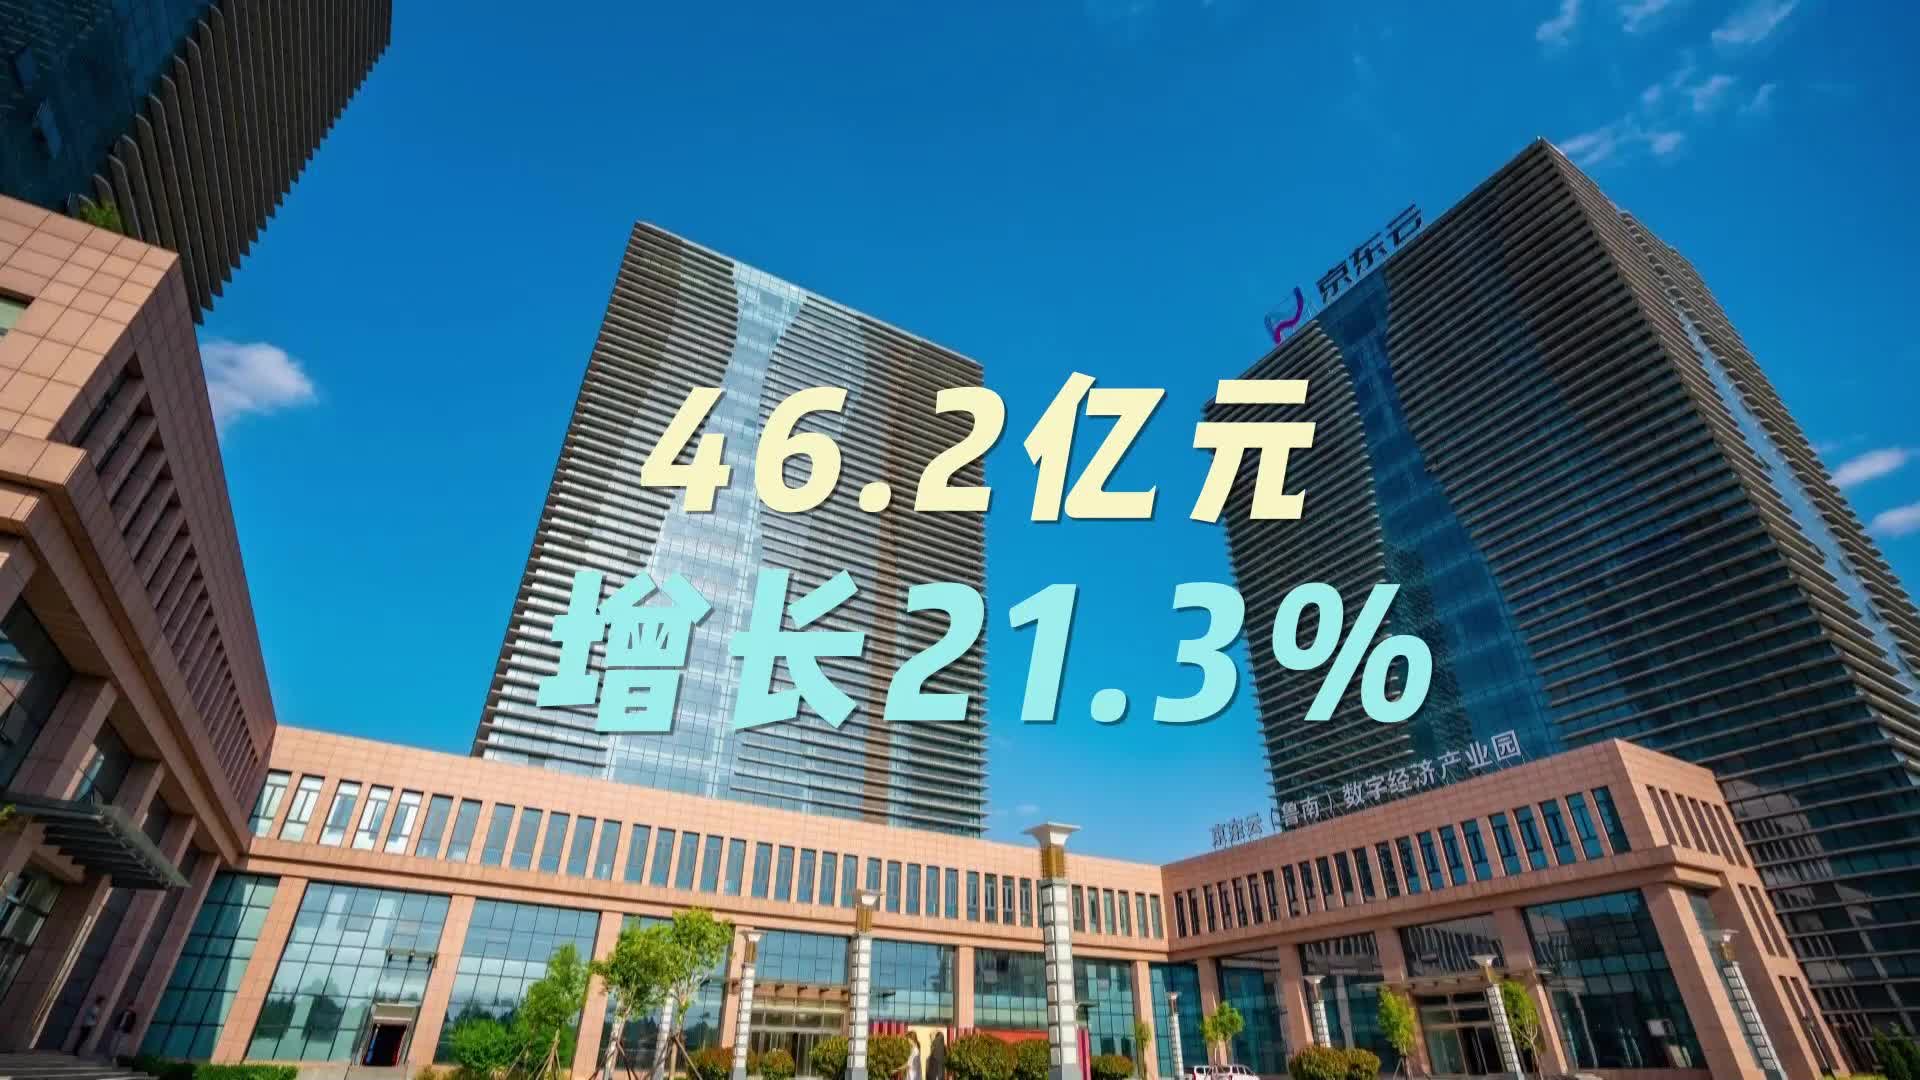 【邹视频·新闻】16秒|46.2亿元 增长21.3%